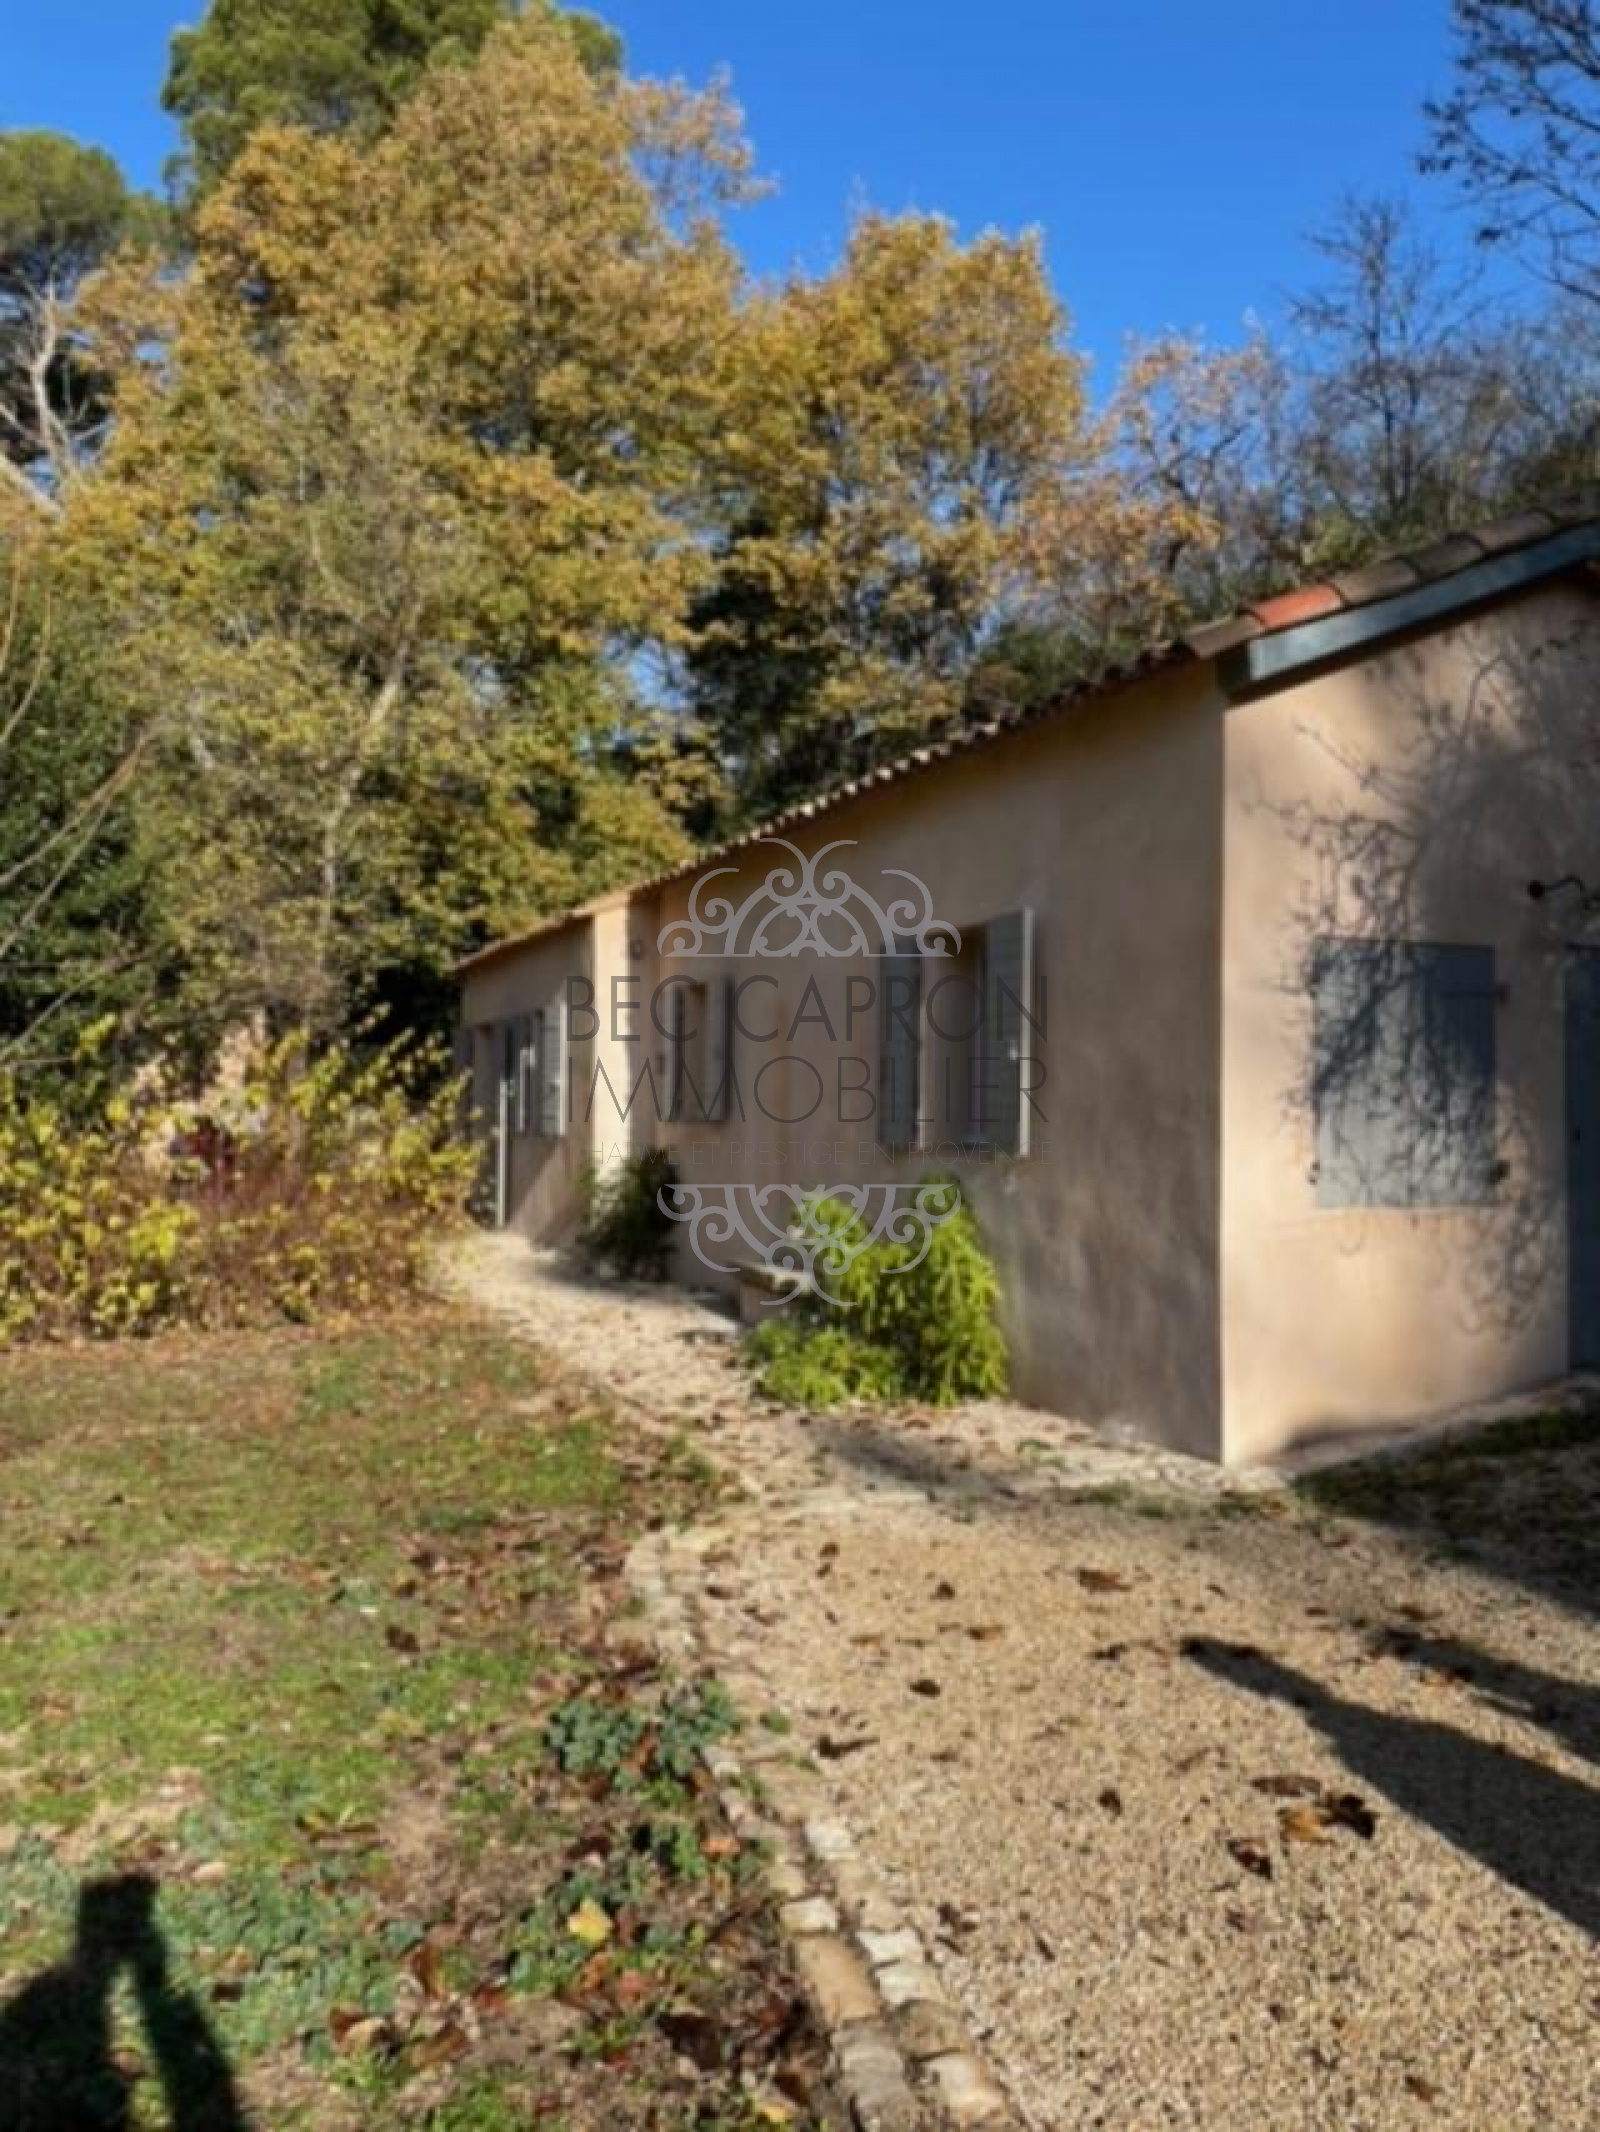 Image_32, Maisons (maison, propriÃ©tÃ©, villa, Mas,bastide, maison de village), Aix-en-Provence, ref :1065